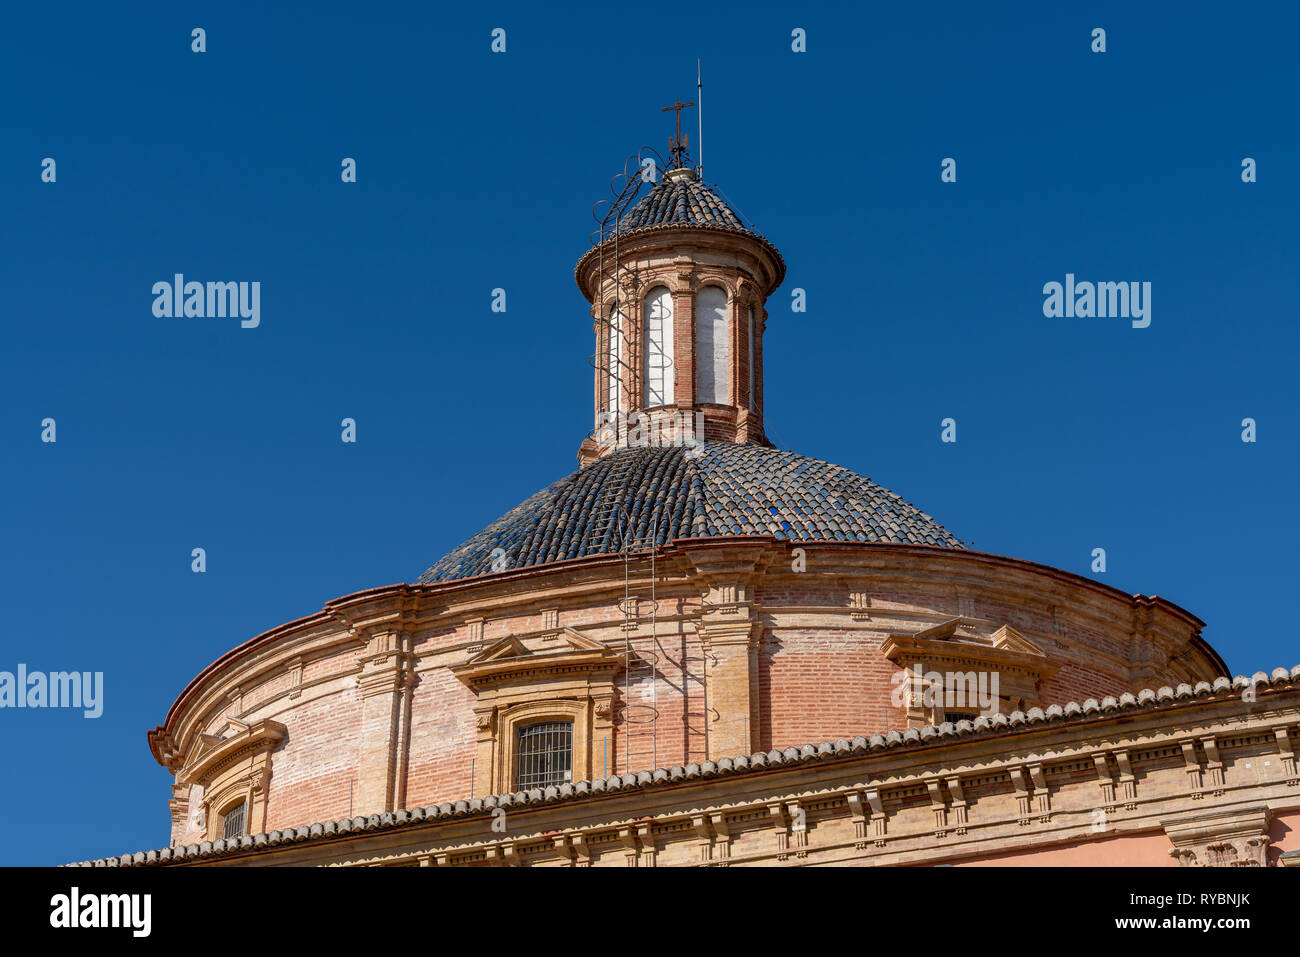 VALENCIA, Spagna - 25 febbraio : Cupola della Cattedrale di Nostra Signora dell'abbandonato a Valencia in Spagna il 25 febbraio 2019 Foto Stock